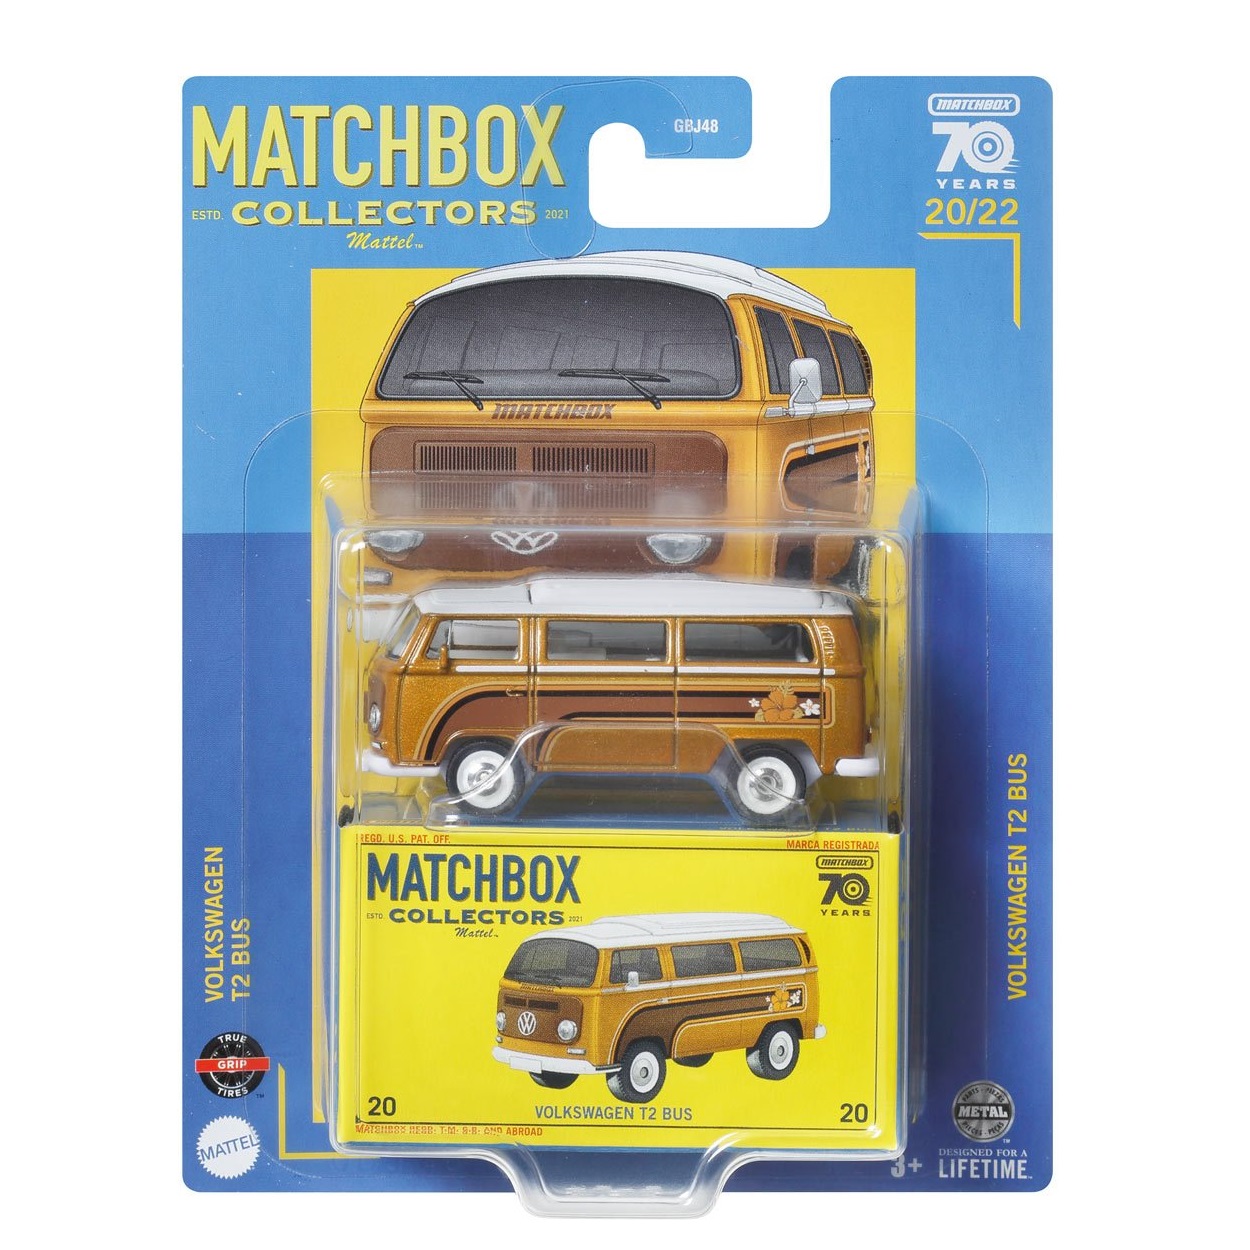 Matchbox Collectors Series (2023) Volkswagen T2 Bus #20 - FreyrWare